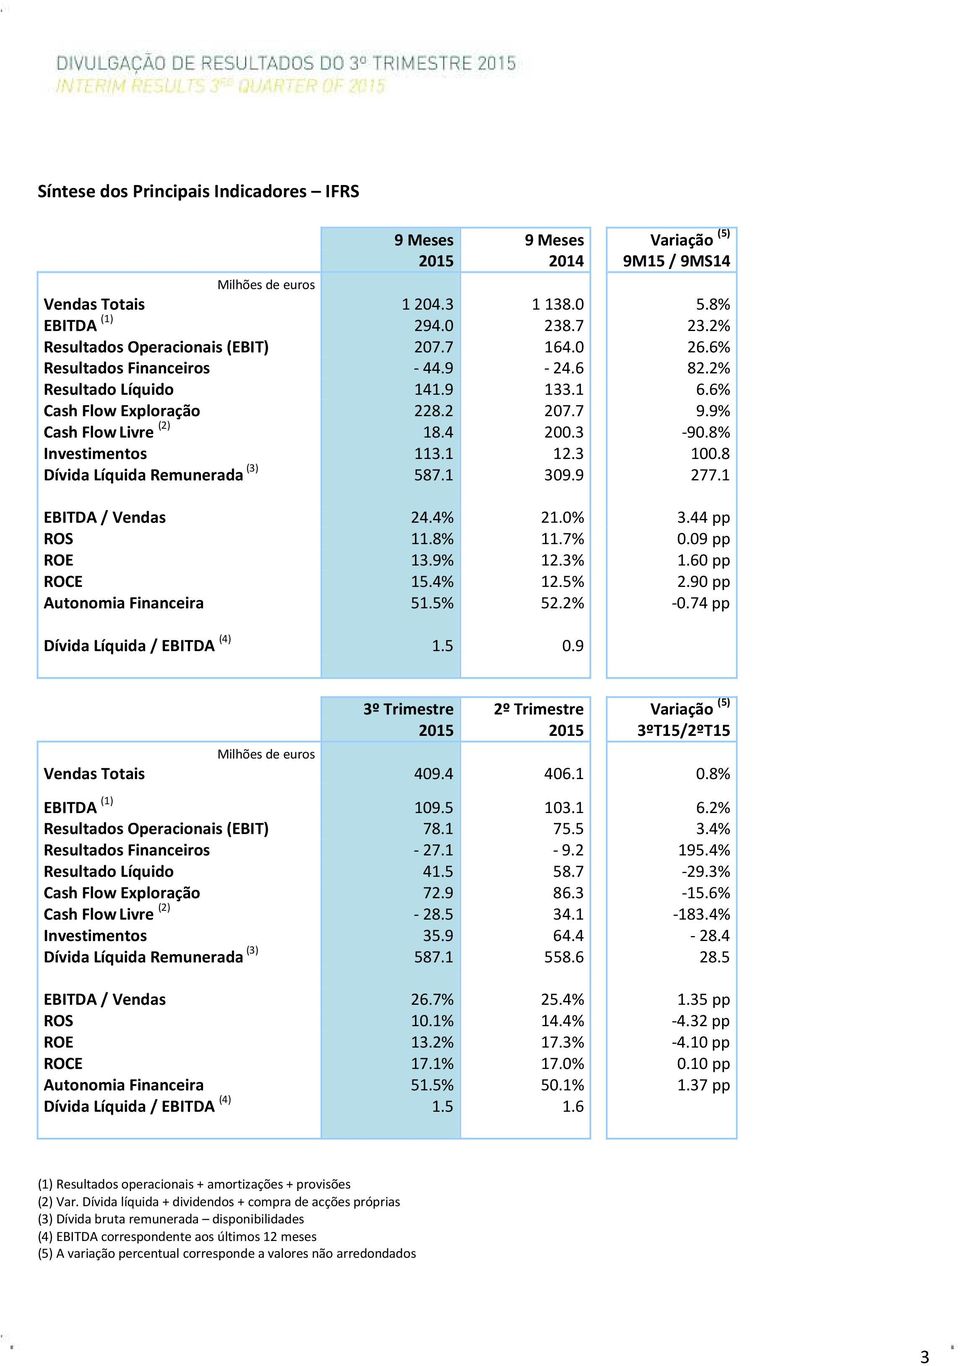 8% Investimentos 113.1 12.3 100.8 Dívida Líquida Remunerada (3) 587.1 309.9 277.1 EBITDA / Vendas 24.4% 21.0% 3.44 pp ROS 11.8% 11.7% 0.09 pp ROE 13.9% 12.3% 1.60 pp ROCE 15.4% 12.5% 2.